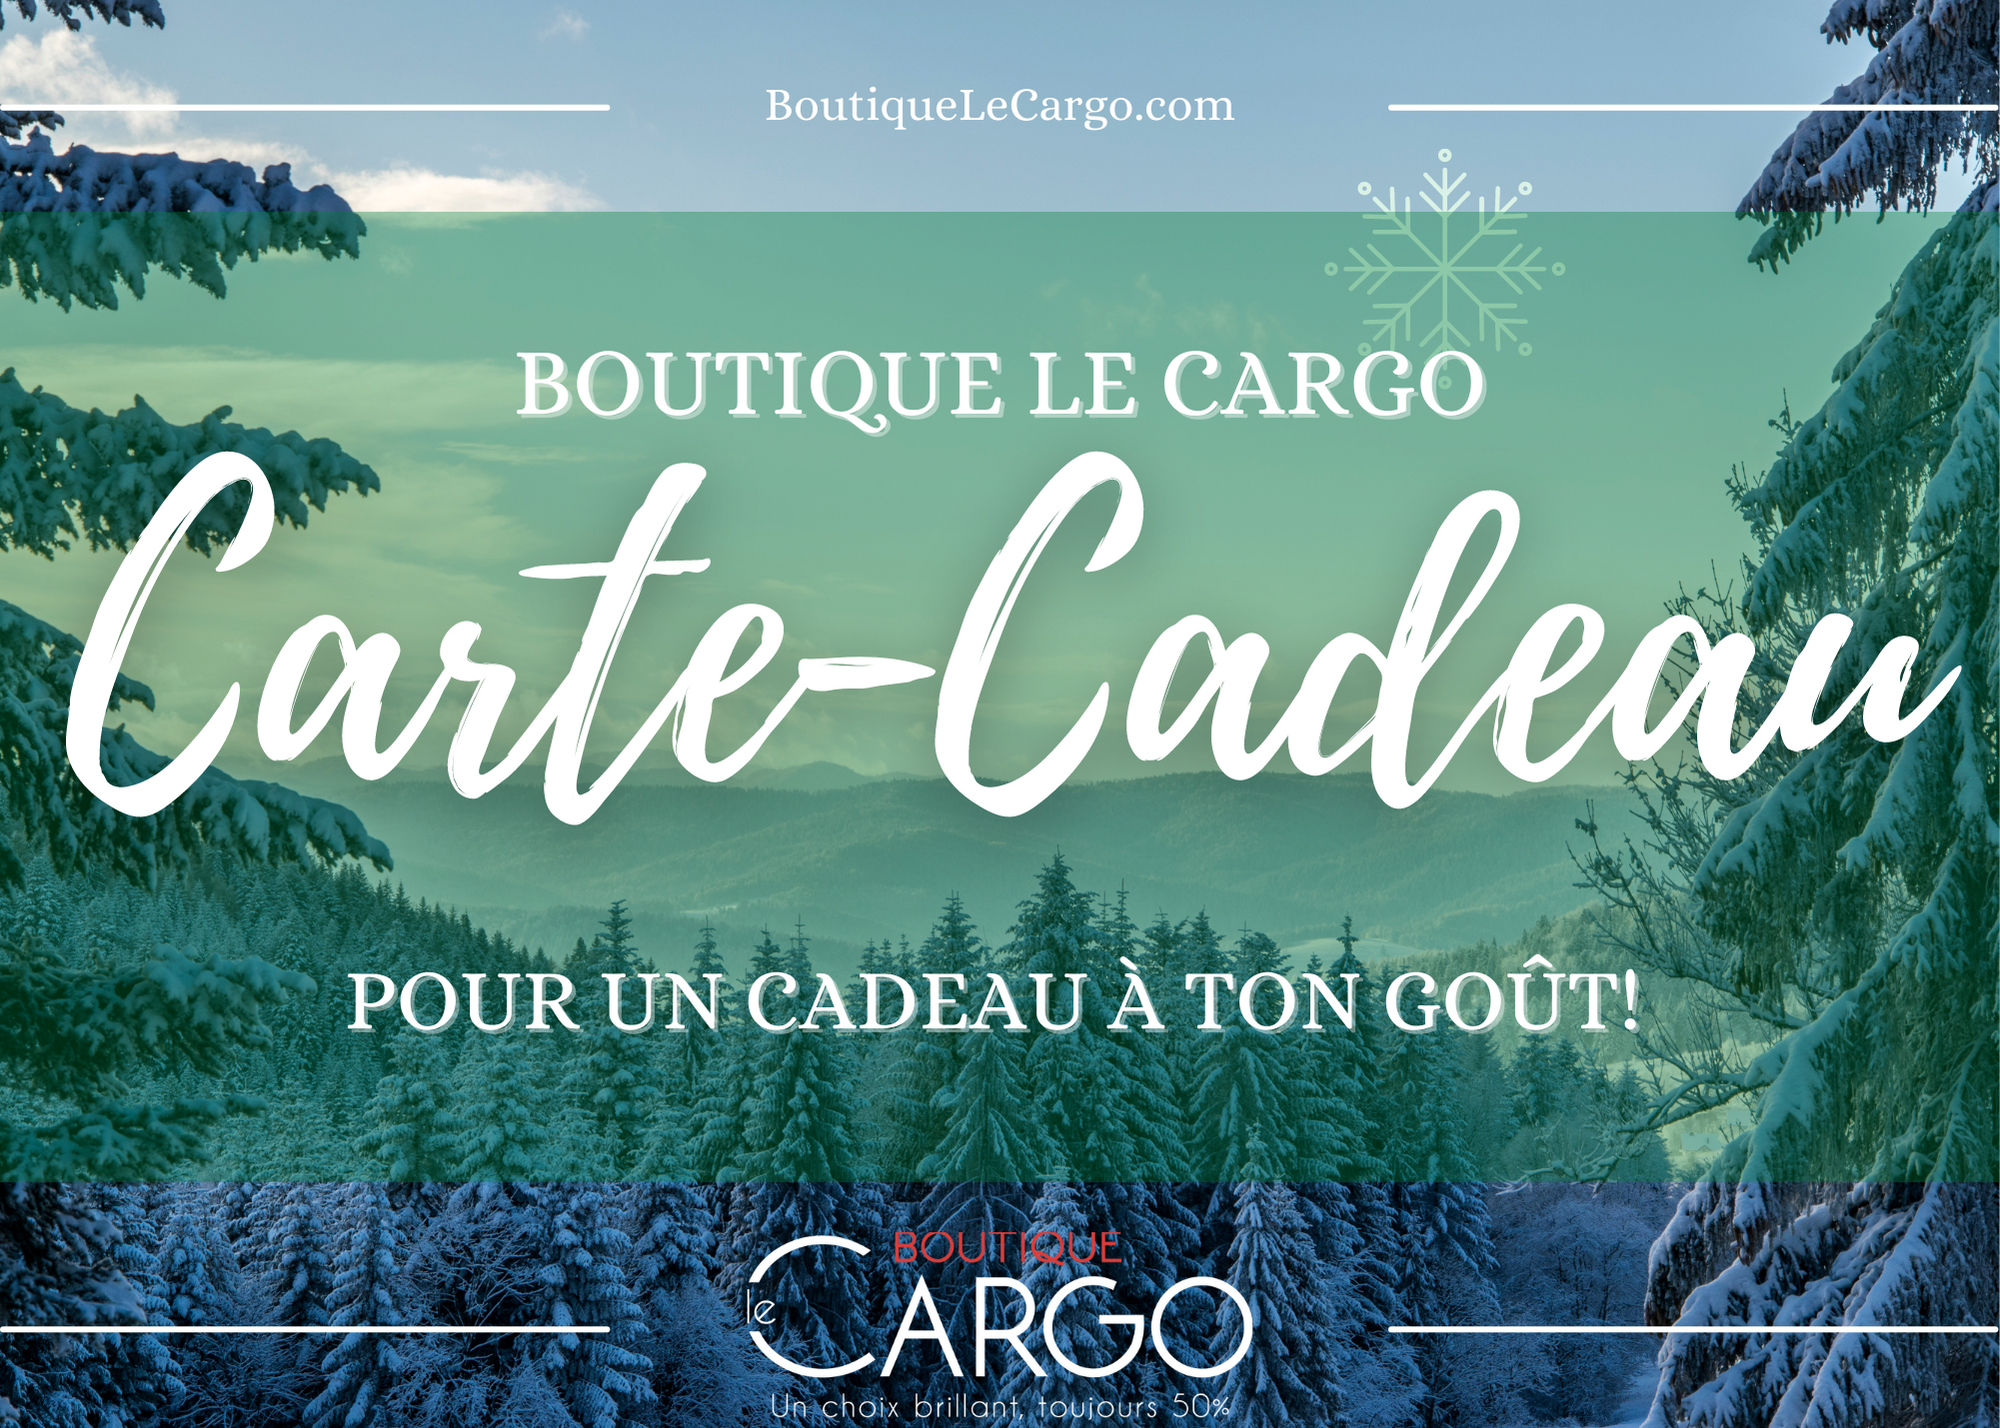 Carte-cadeau Boutique Le Cargo